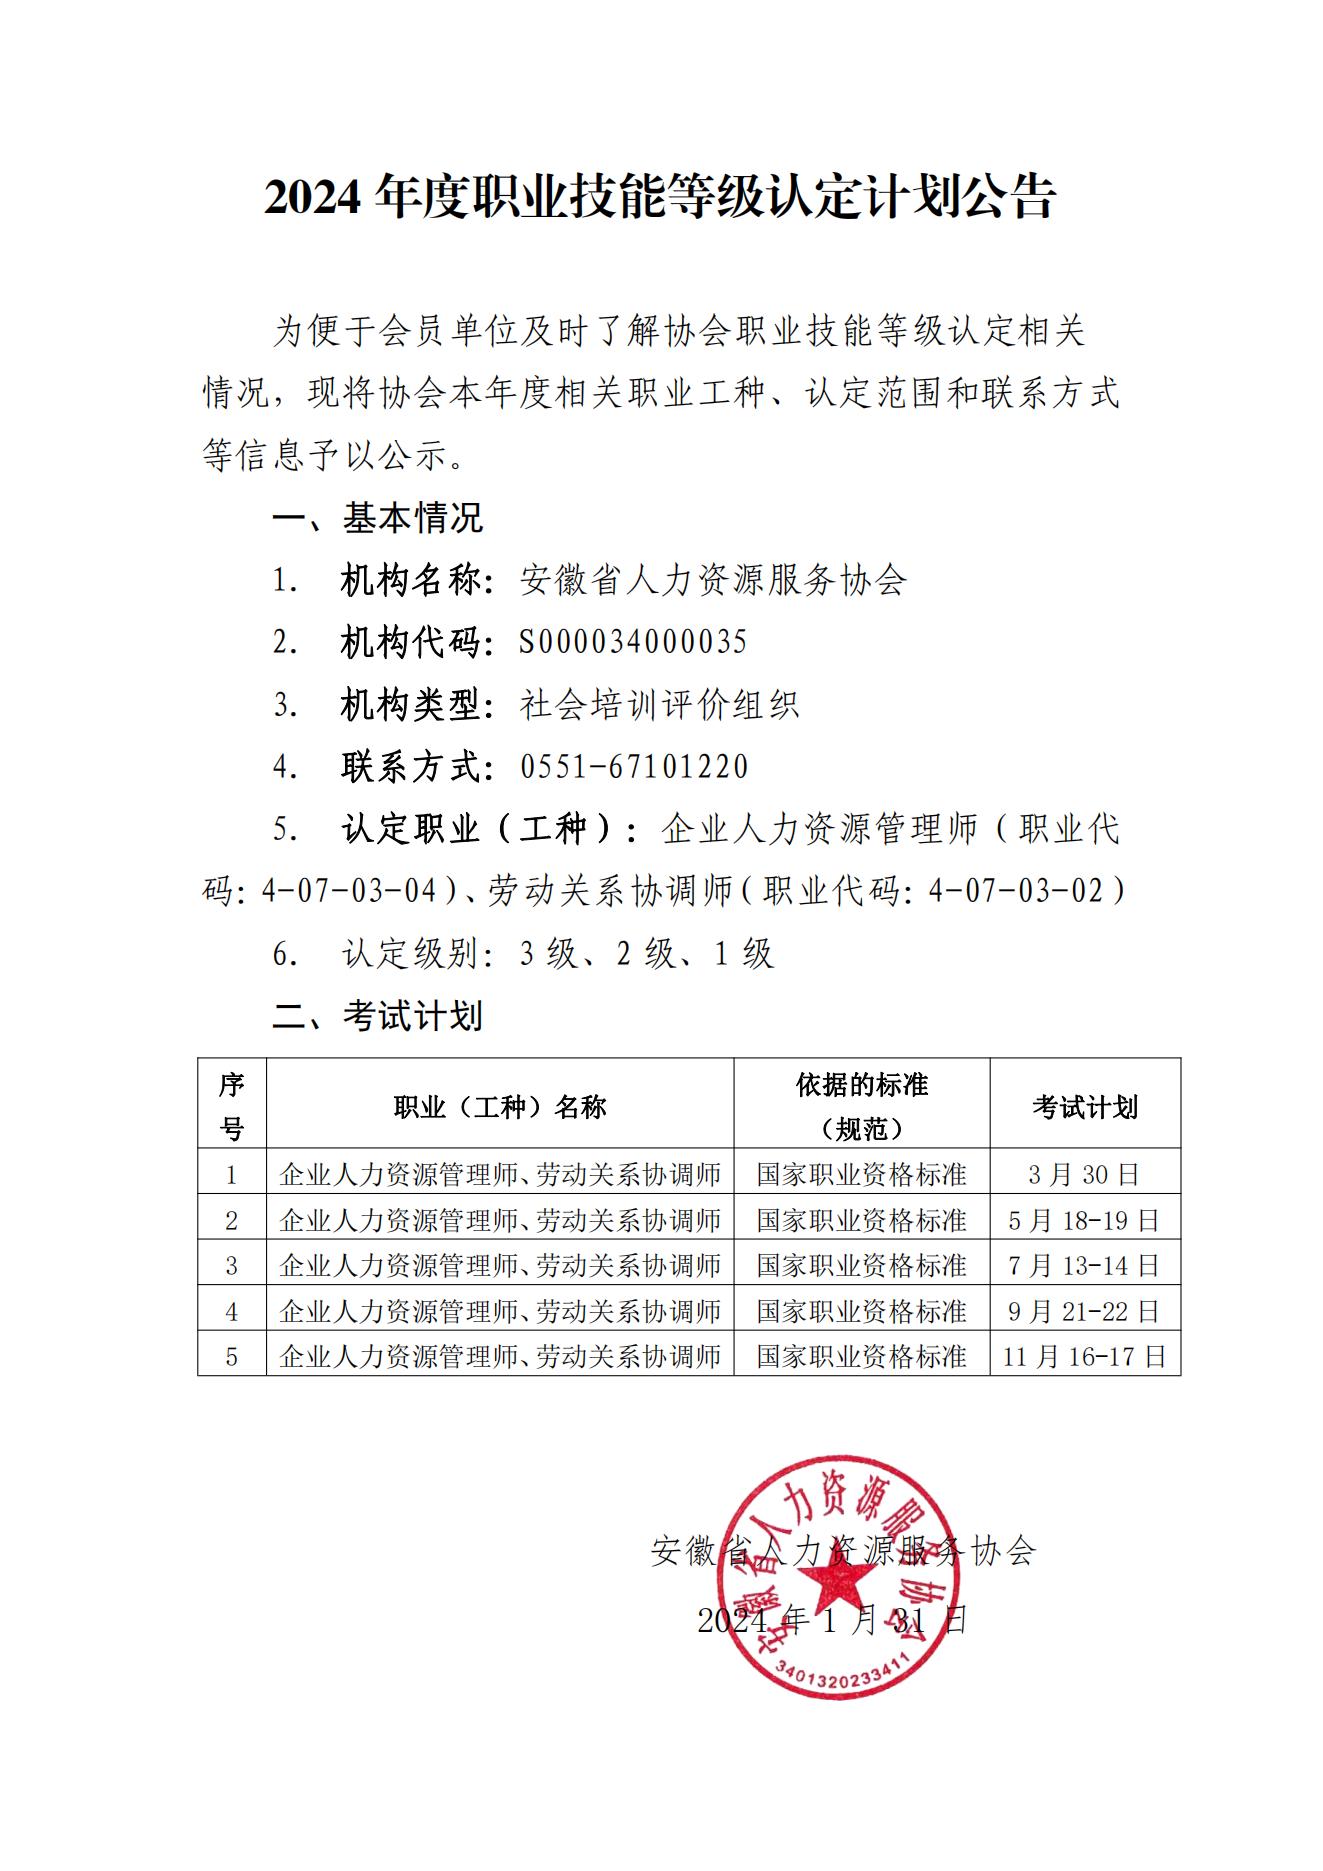 安徽省人力资源服务协会2024年度职业技能等级认定计划公告_00.jpg